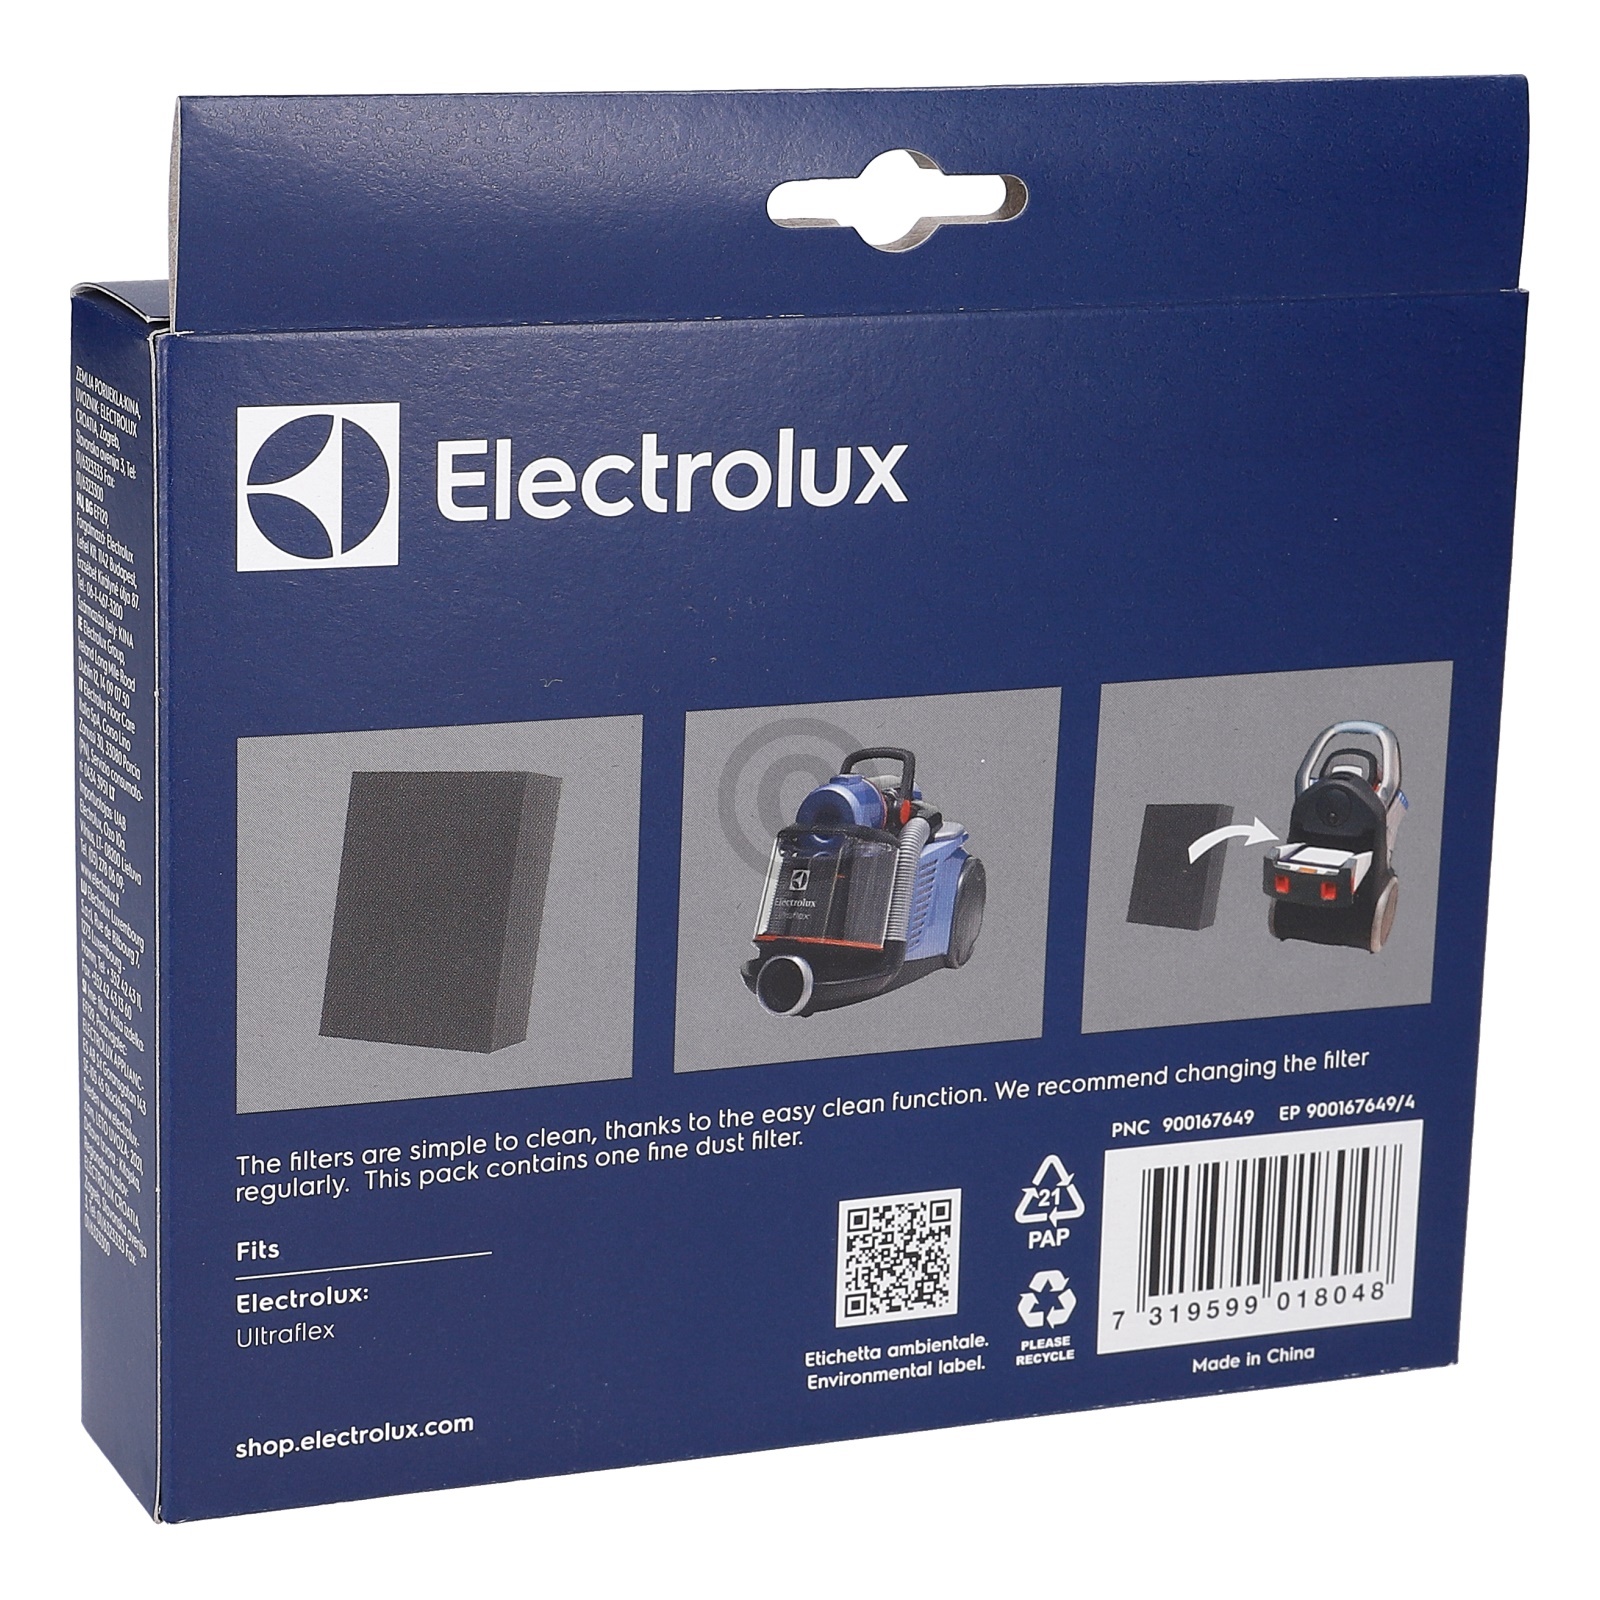 Schaumstofffilter Electrolux EF129 900167649/4 für Staubsauger UltraFlex